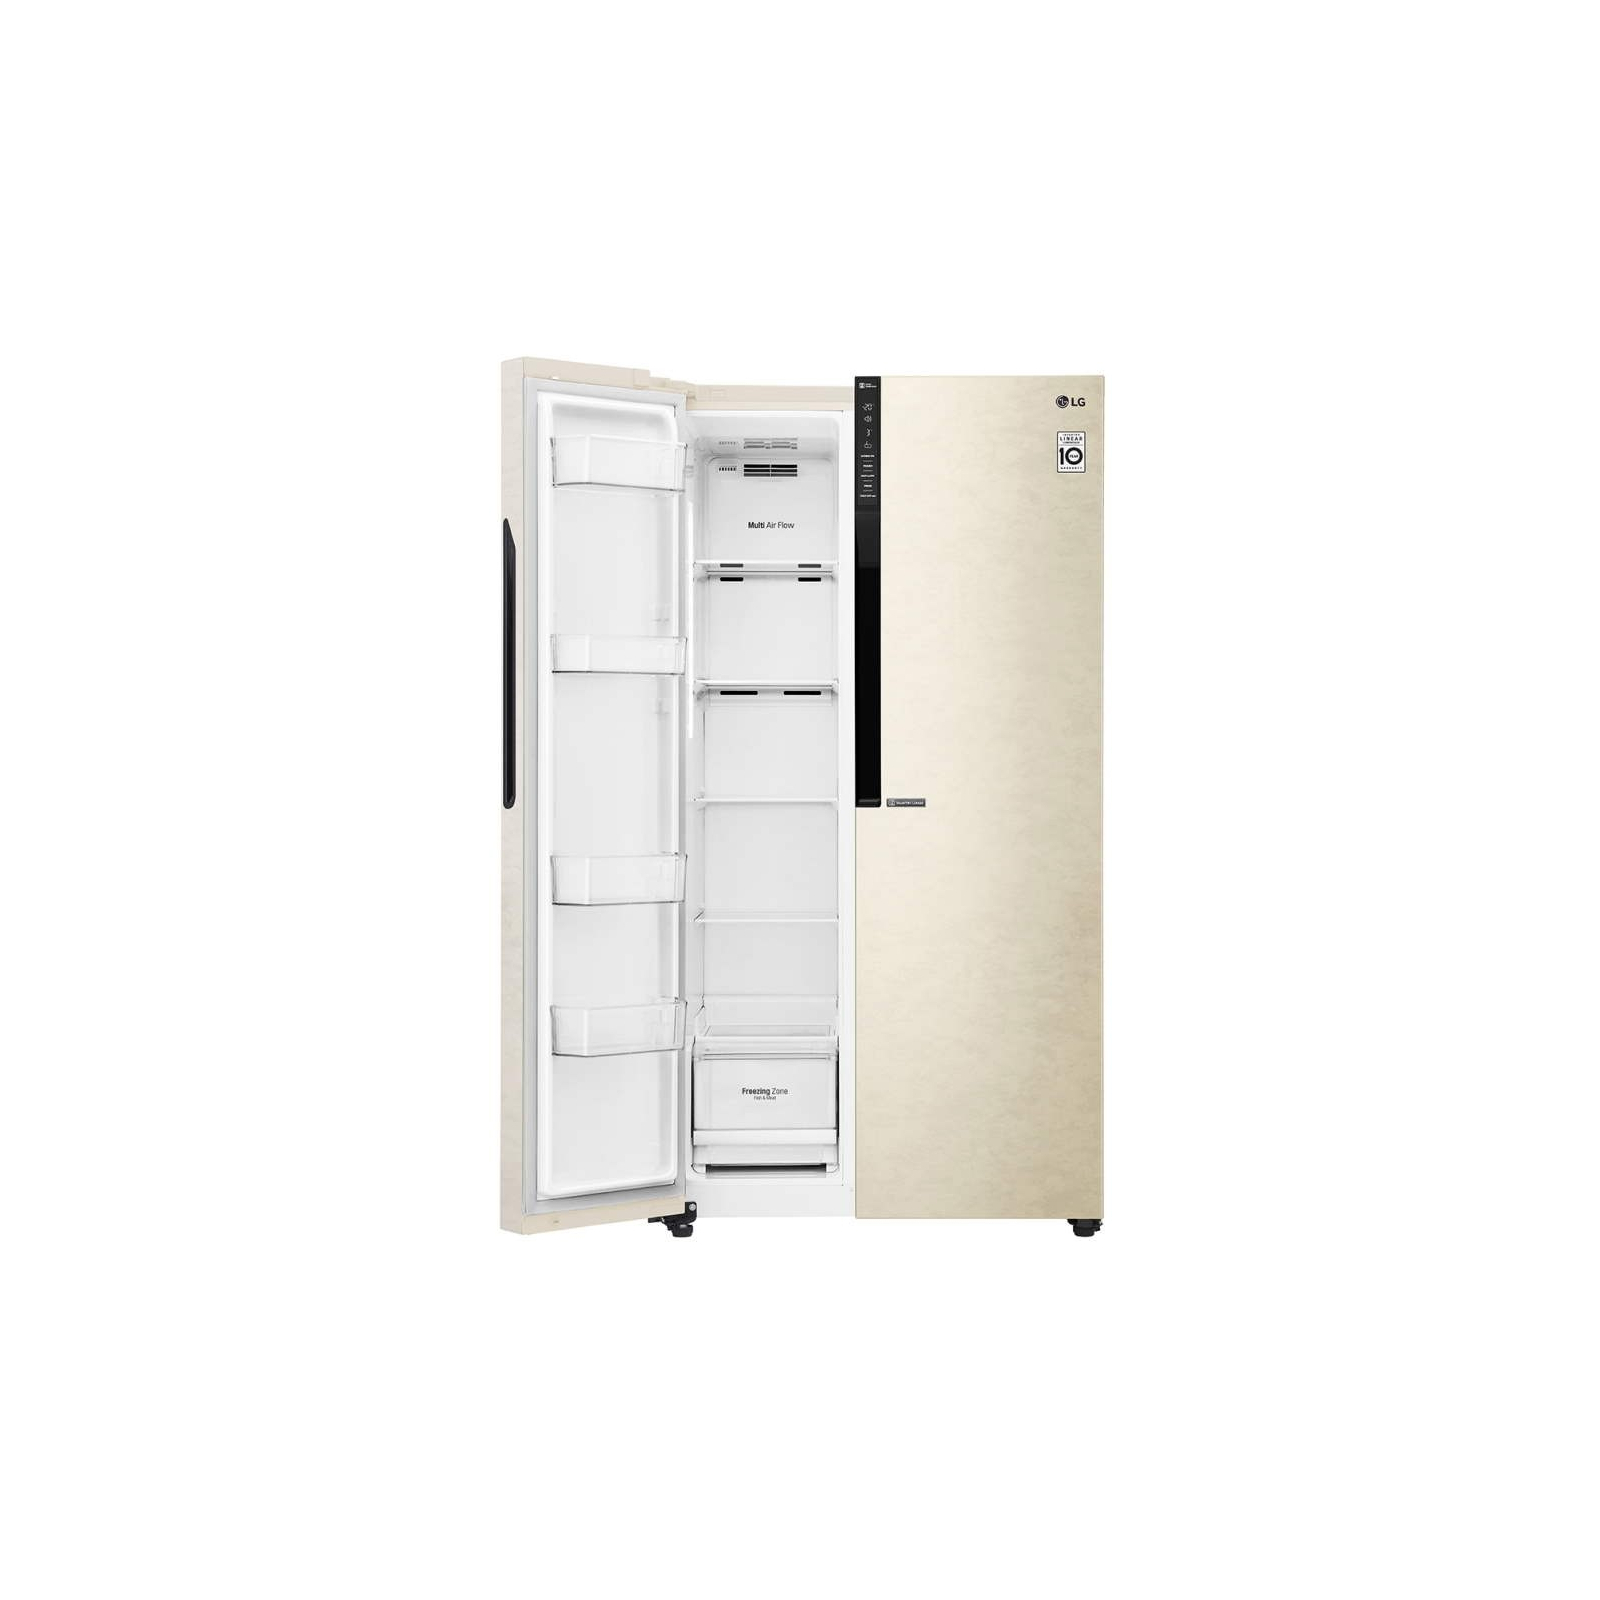 Холодильник LG GC-B247JEDV изображение 5